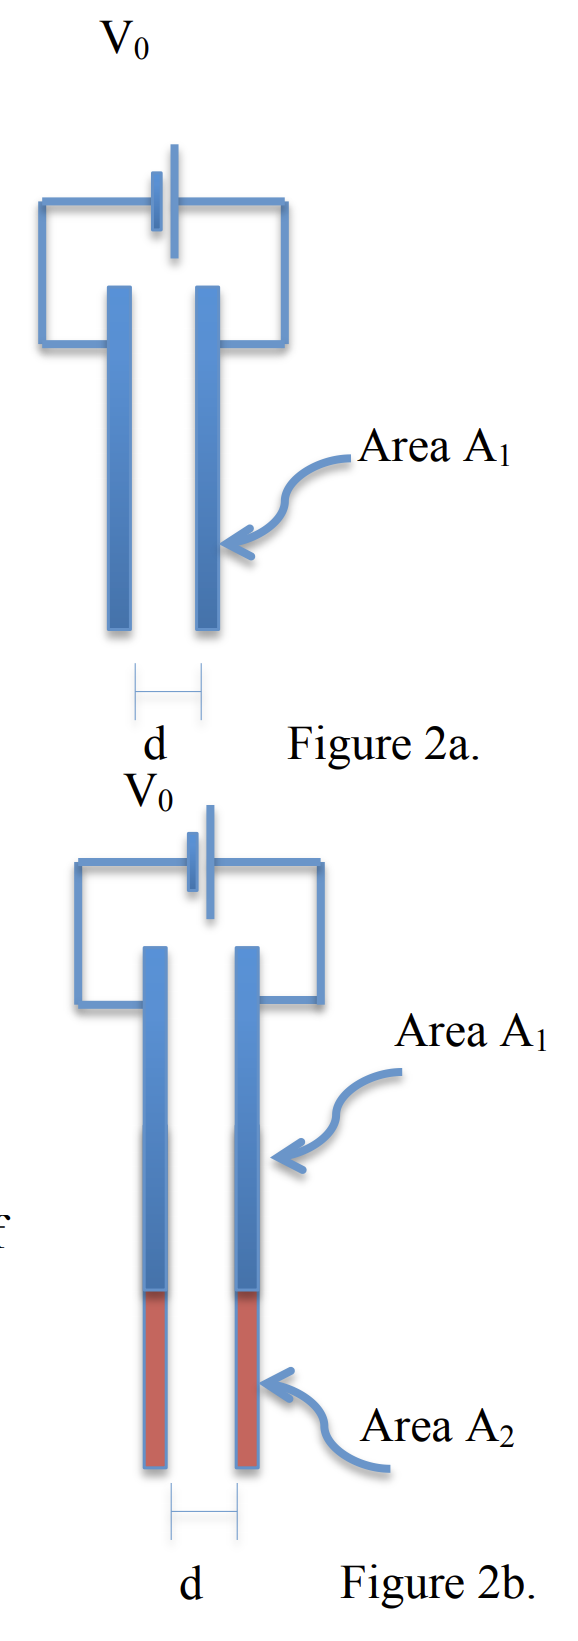 Vo
Area A1
d
Vo
Figure 2a.
Area A1
Area A2
d
Figure 2b.
